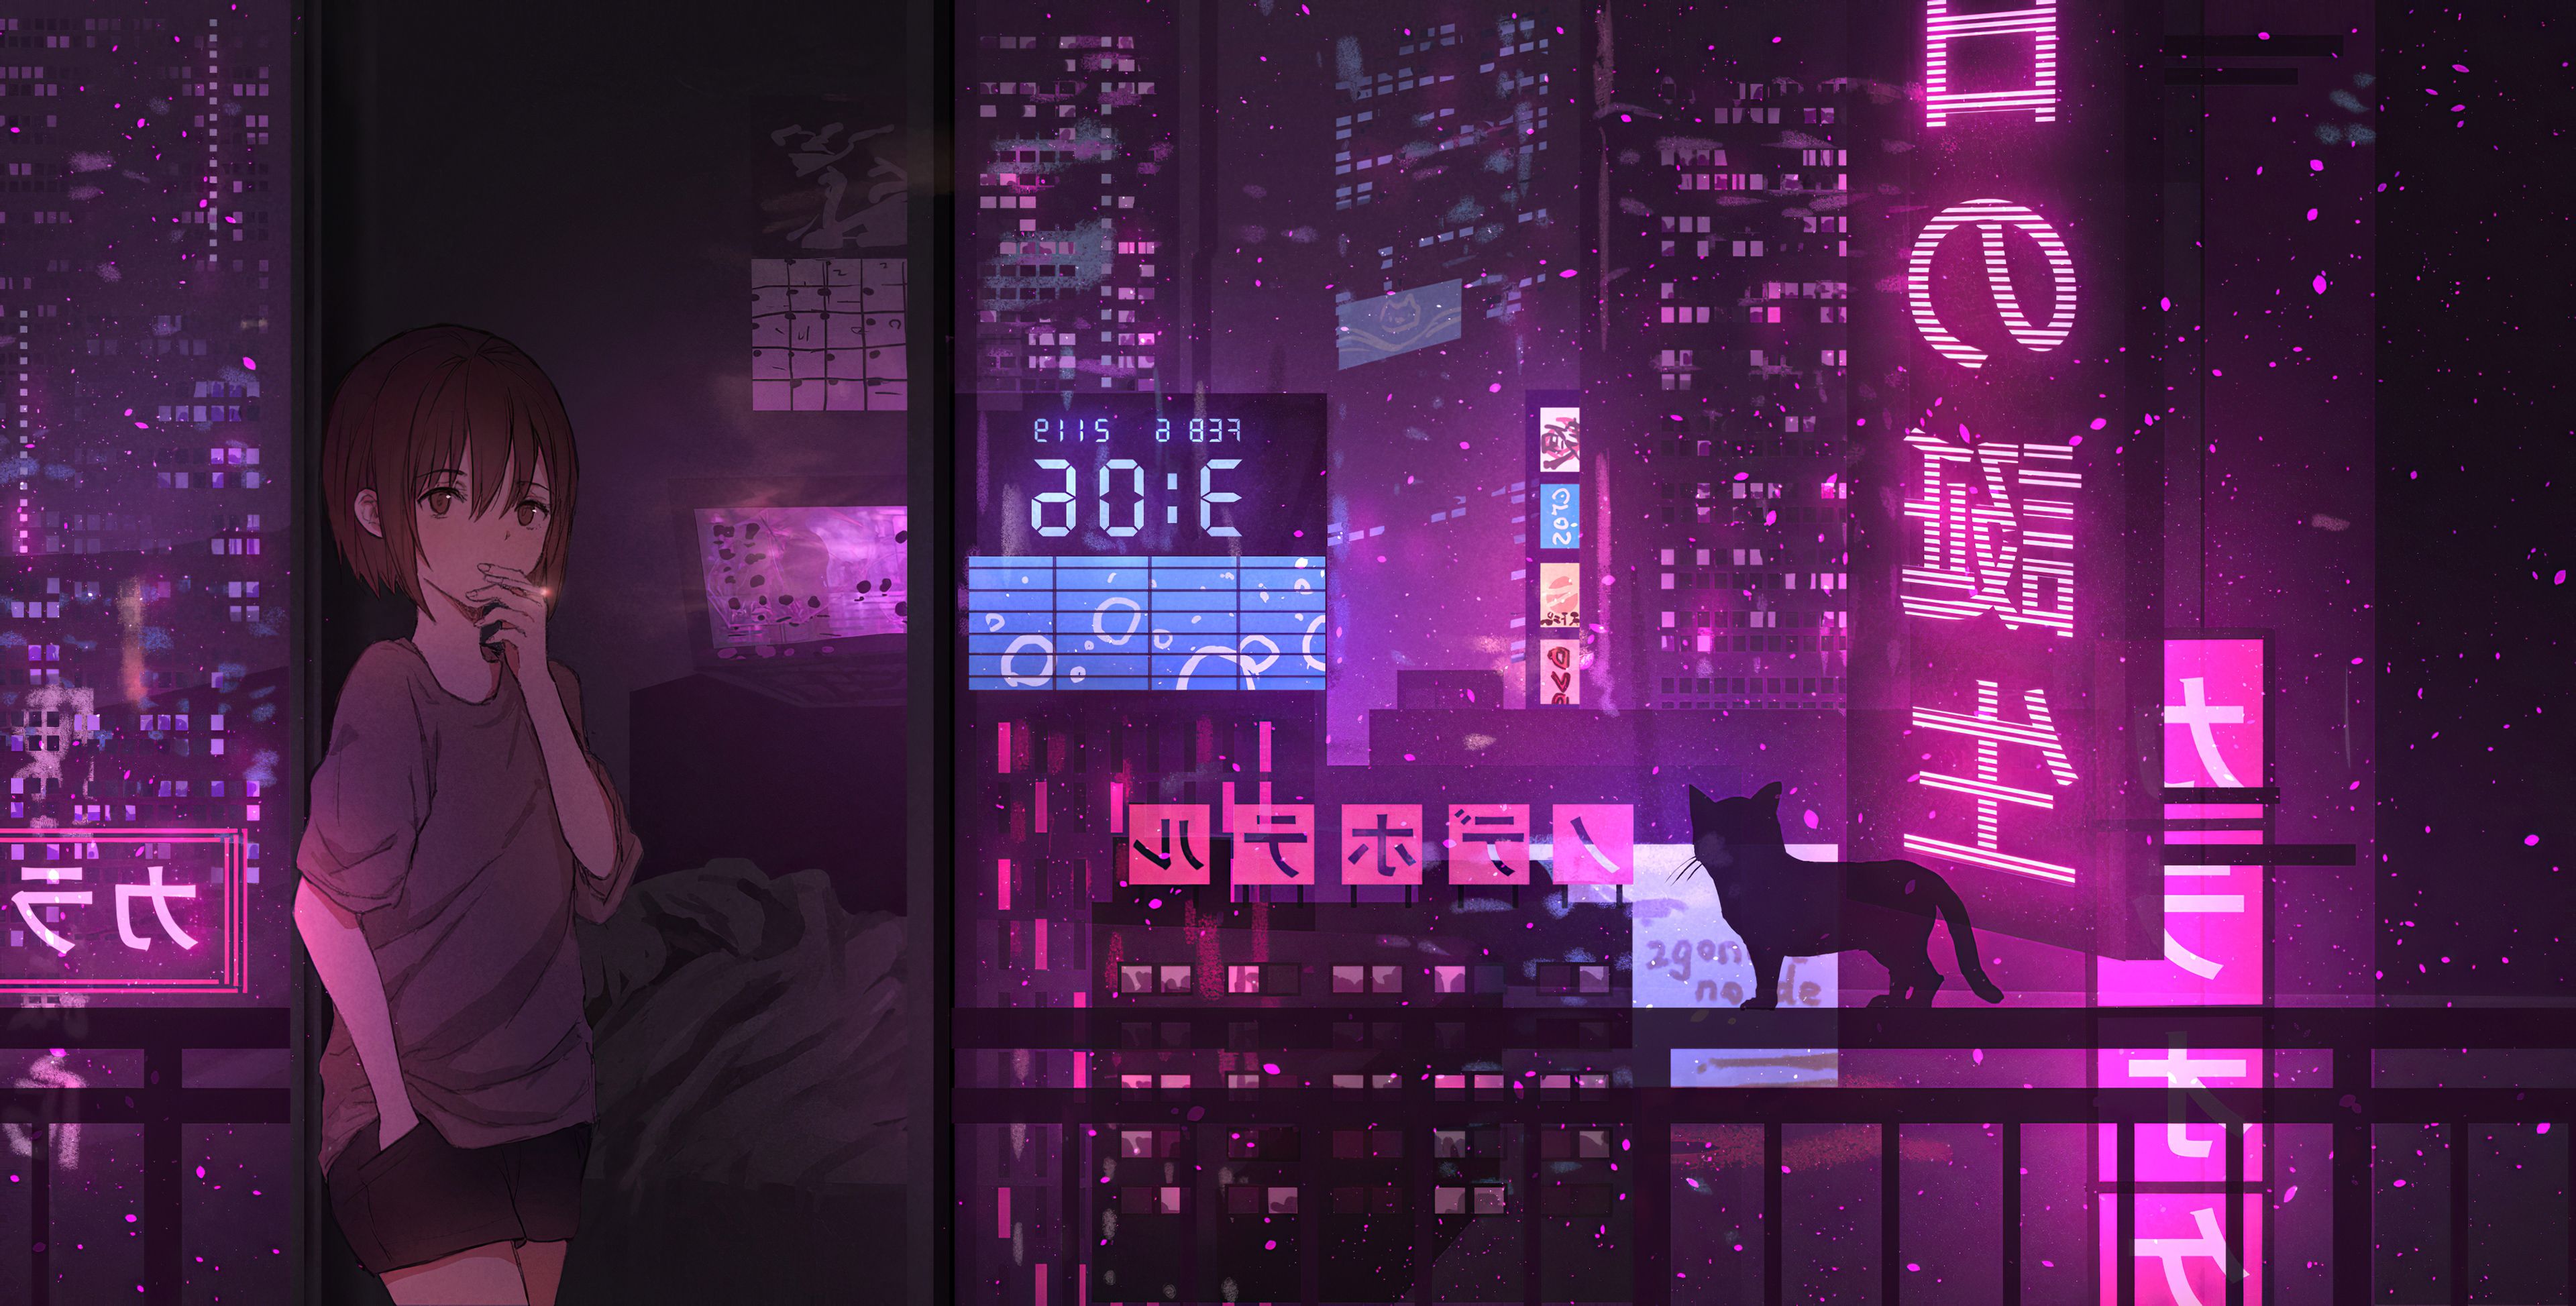 Anime Neon Desktop Wallpapers - Wallpaper Cave